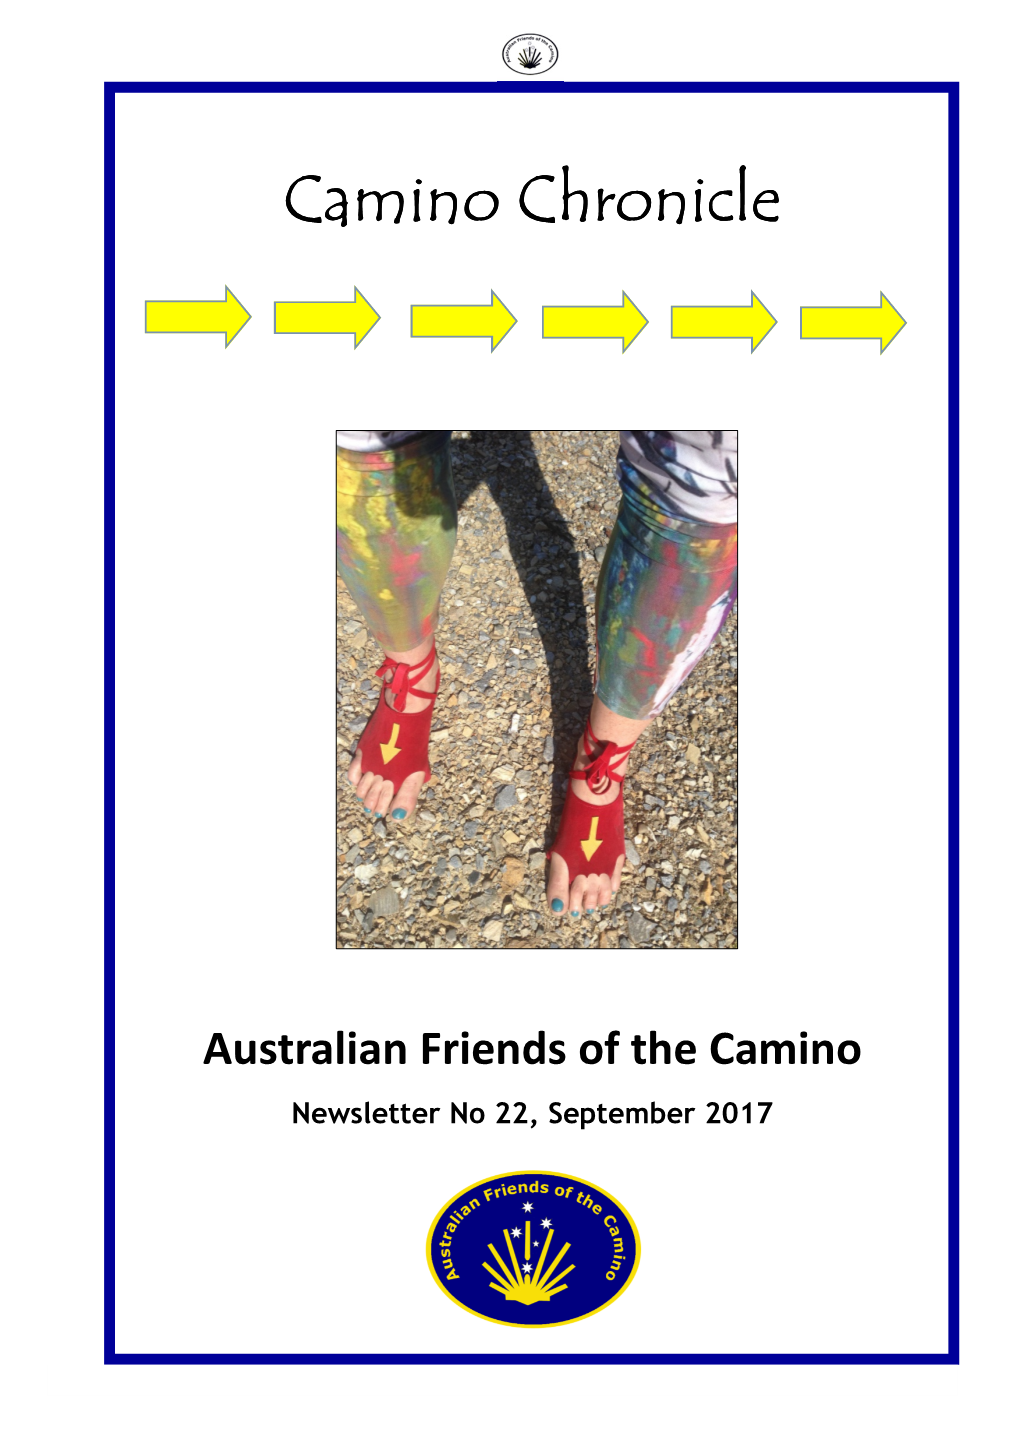 Camino Chronicle, Newsletter No 22, September 2017